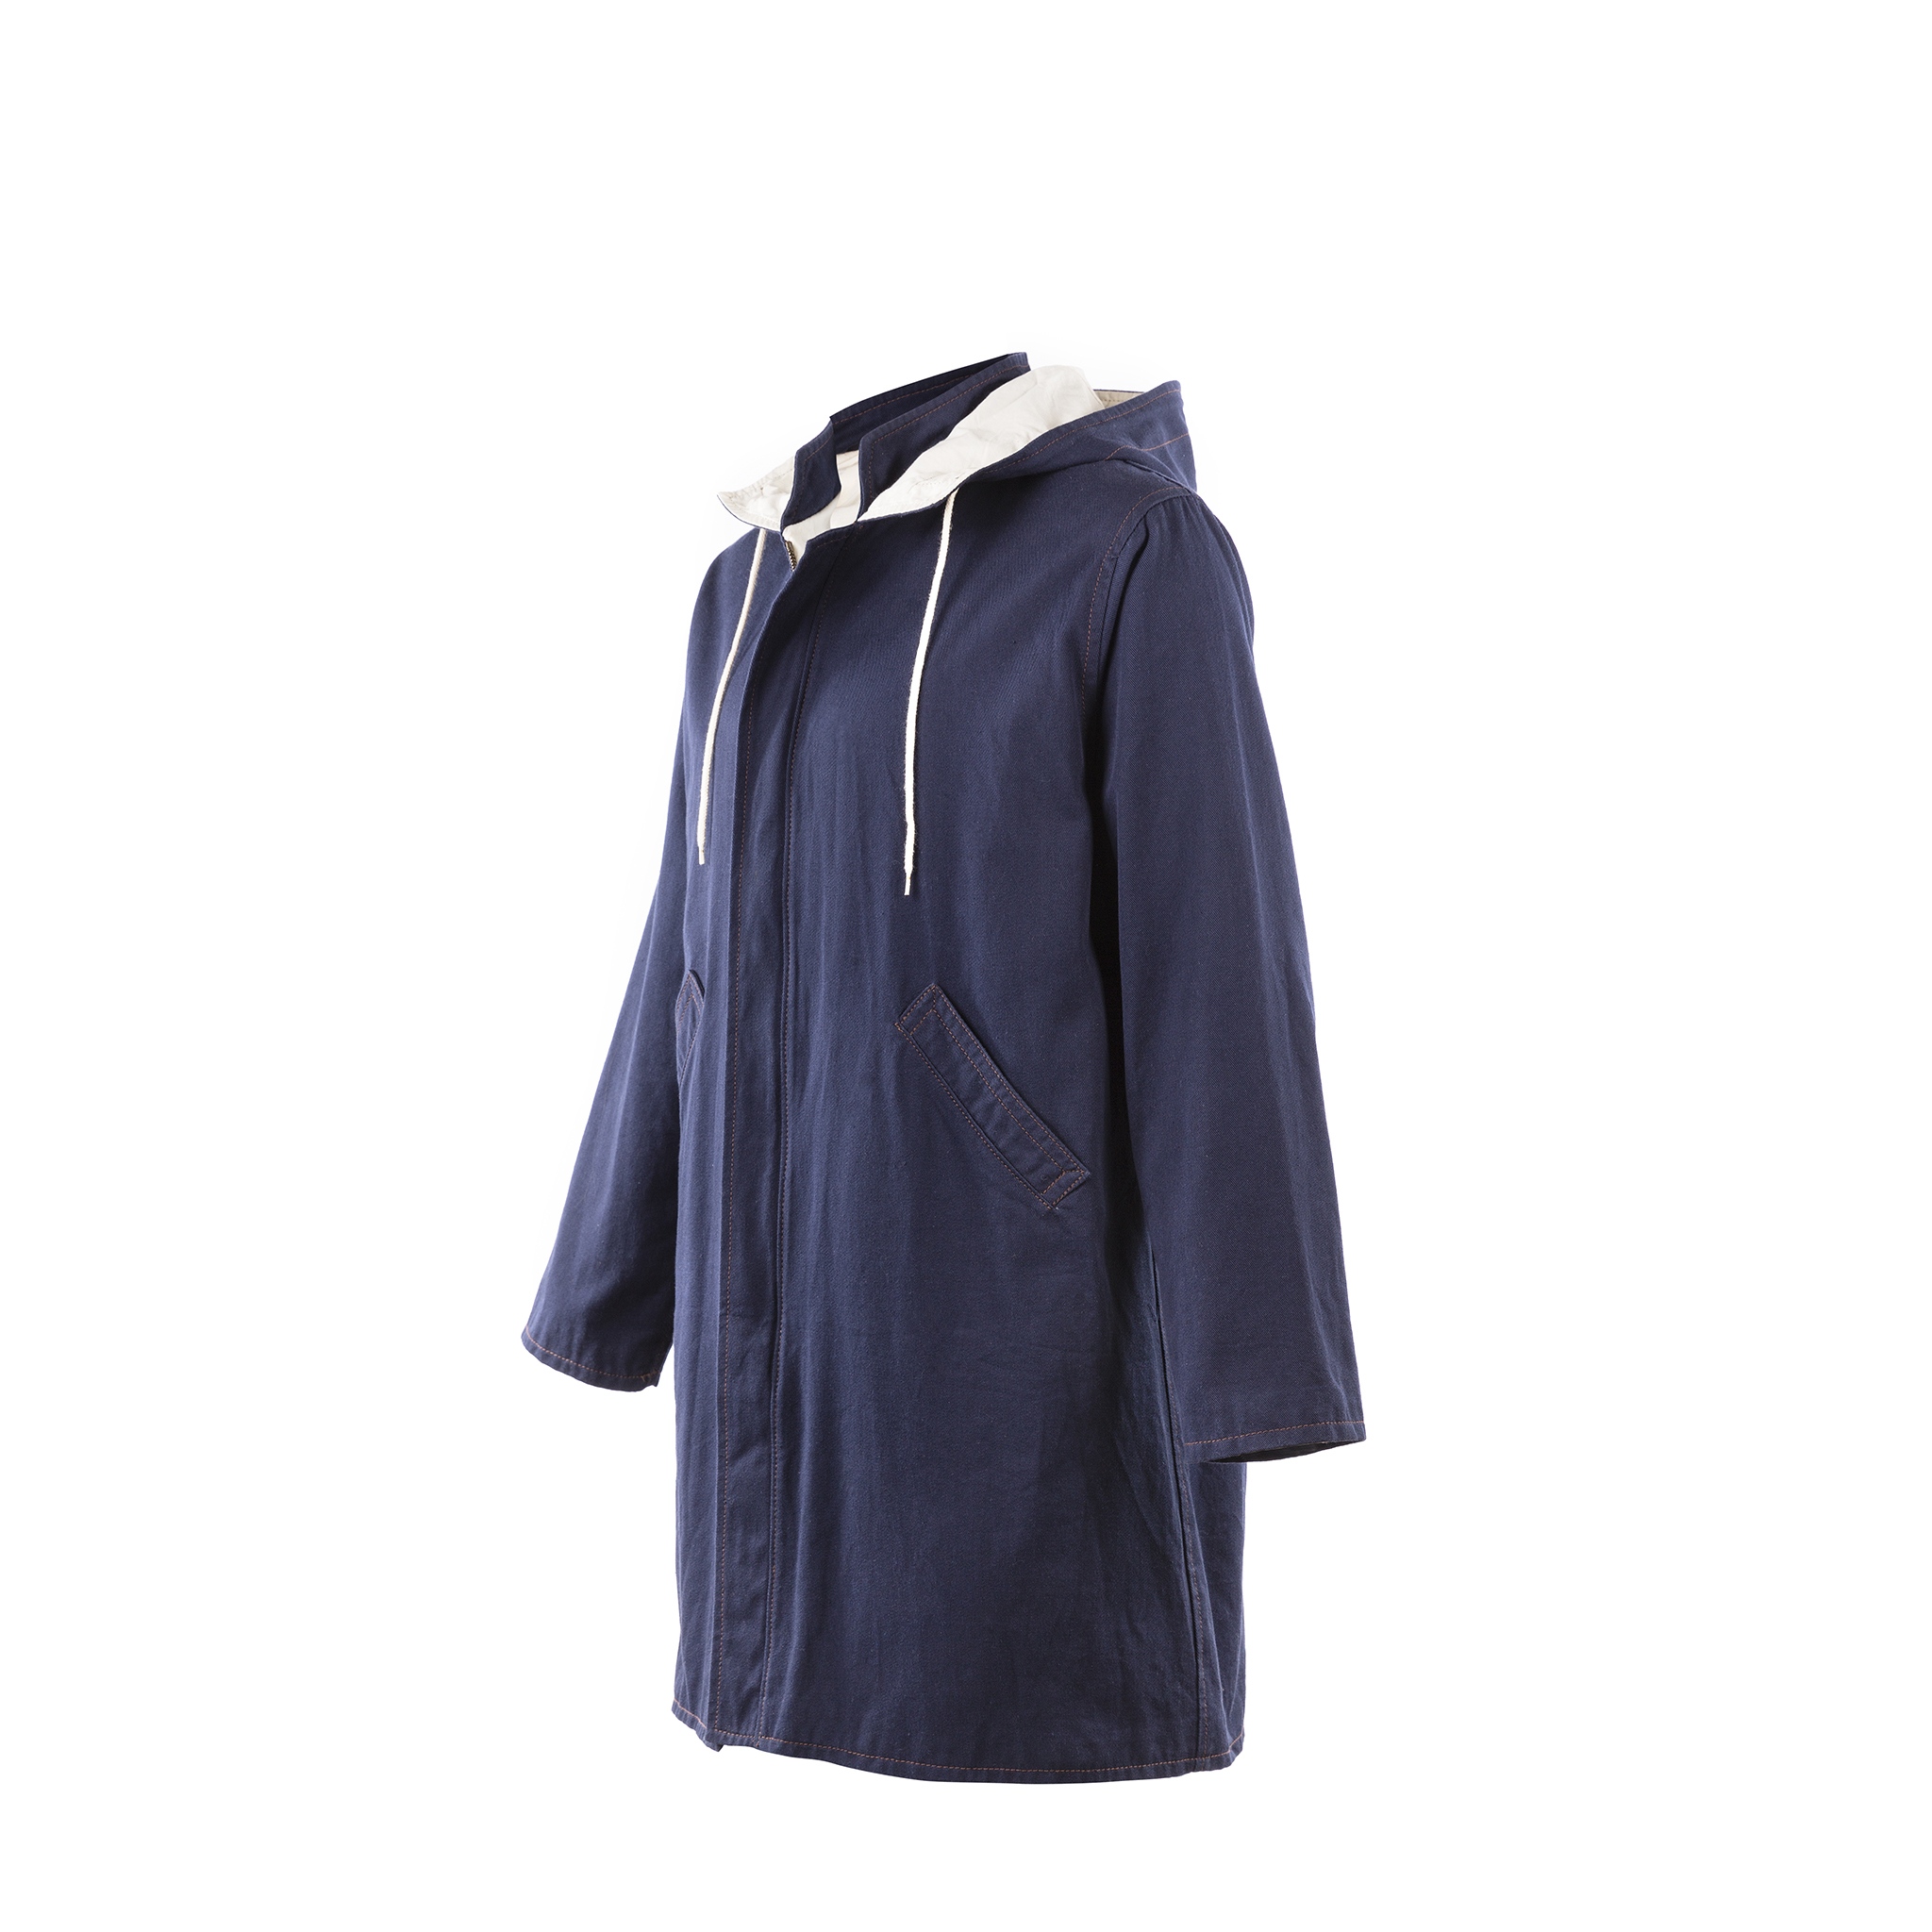 Raincoat - Cotton gabardine - Blue color